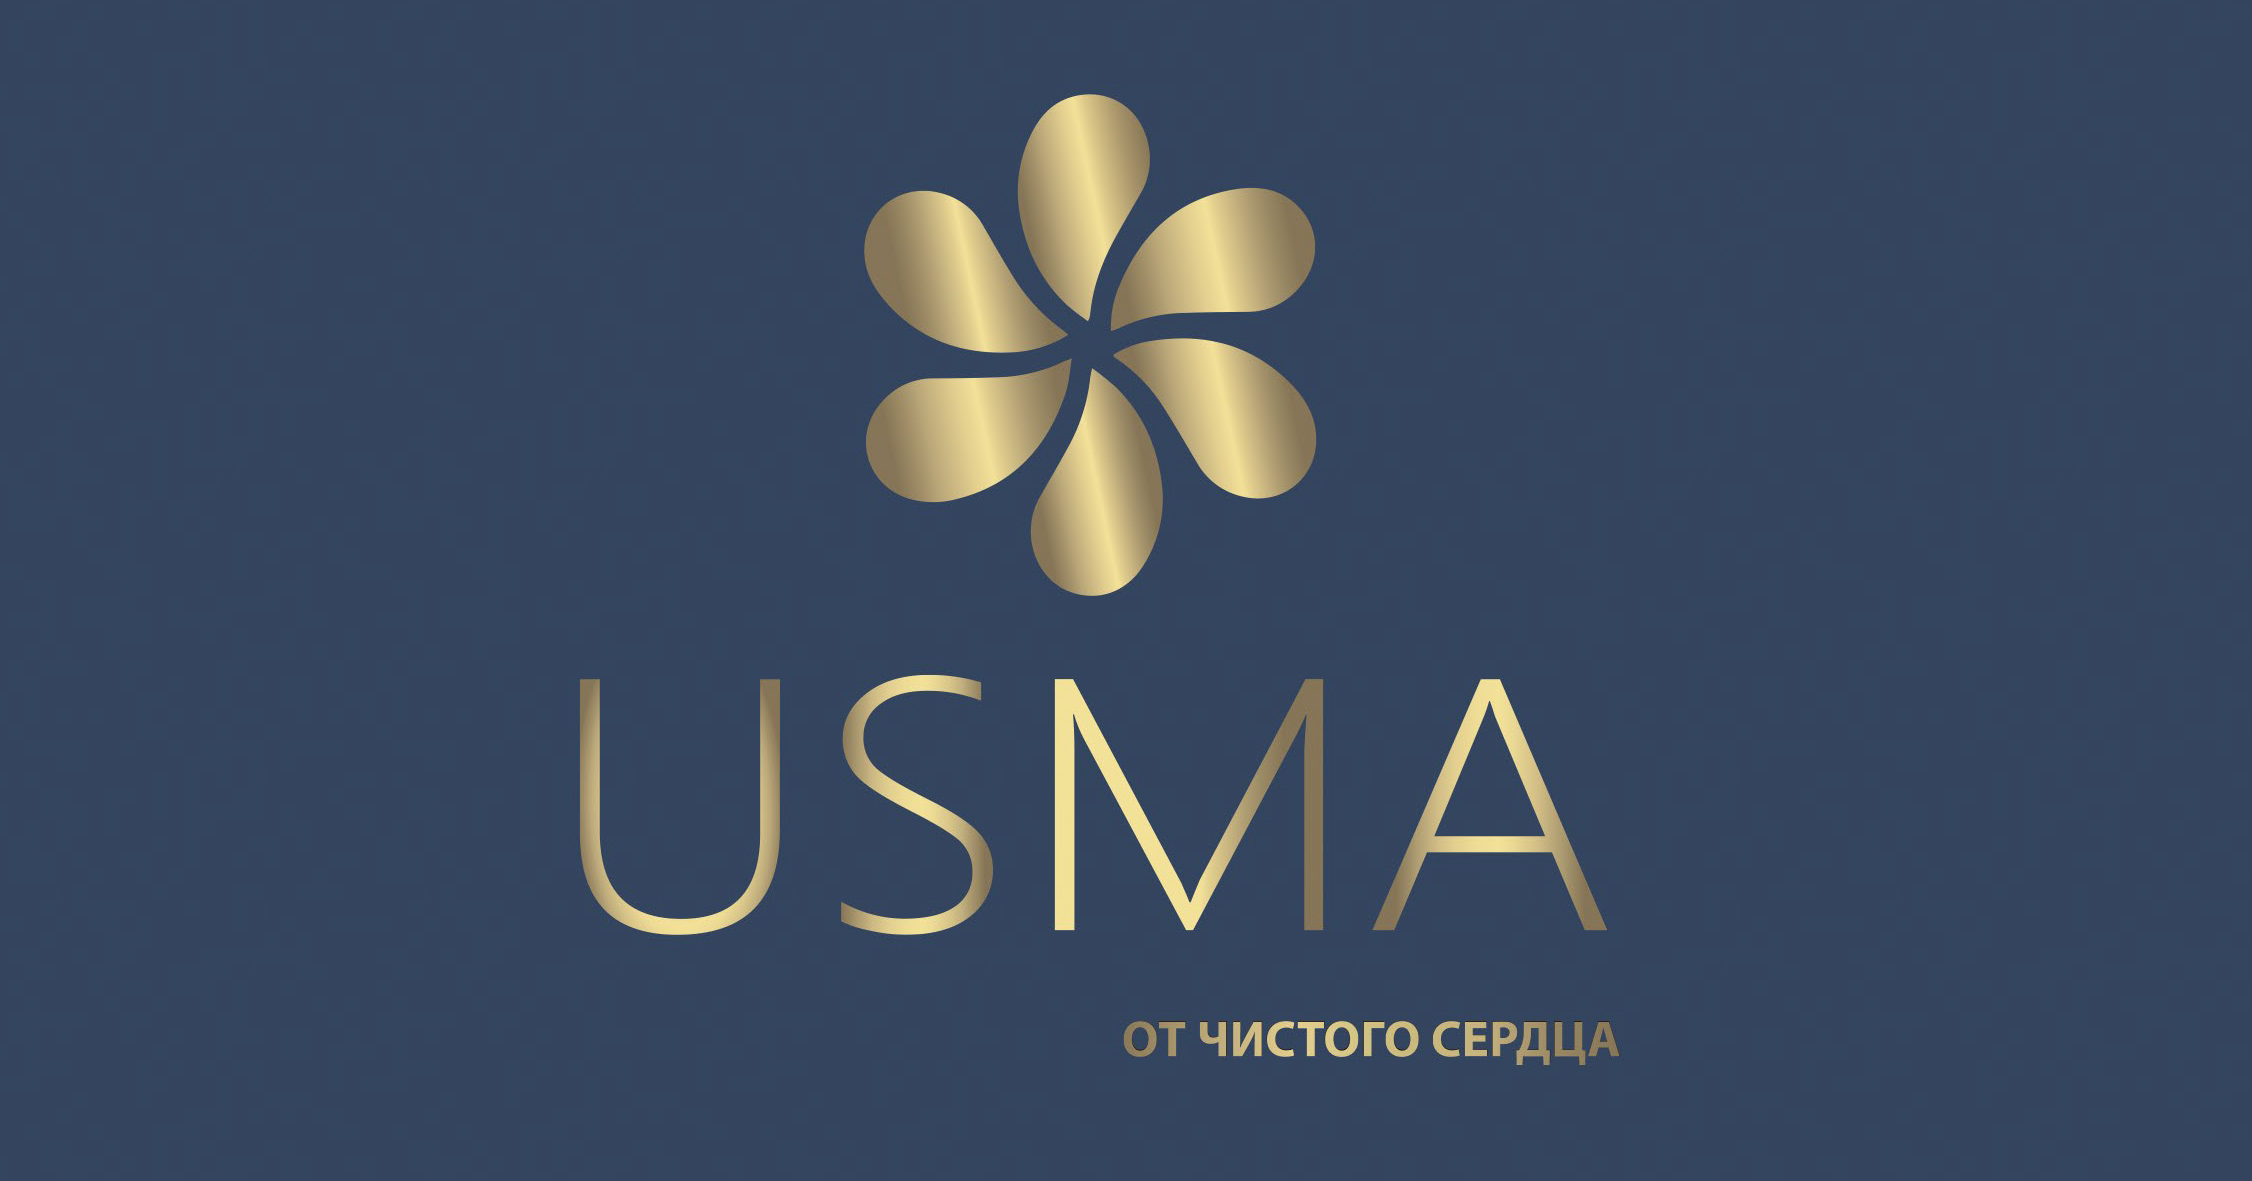 Новый поставщик премиальных товаров - USMA!